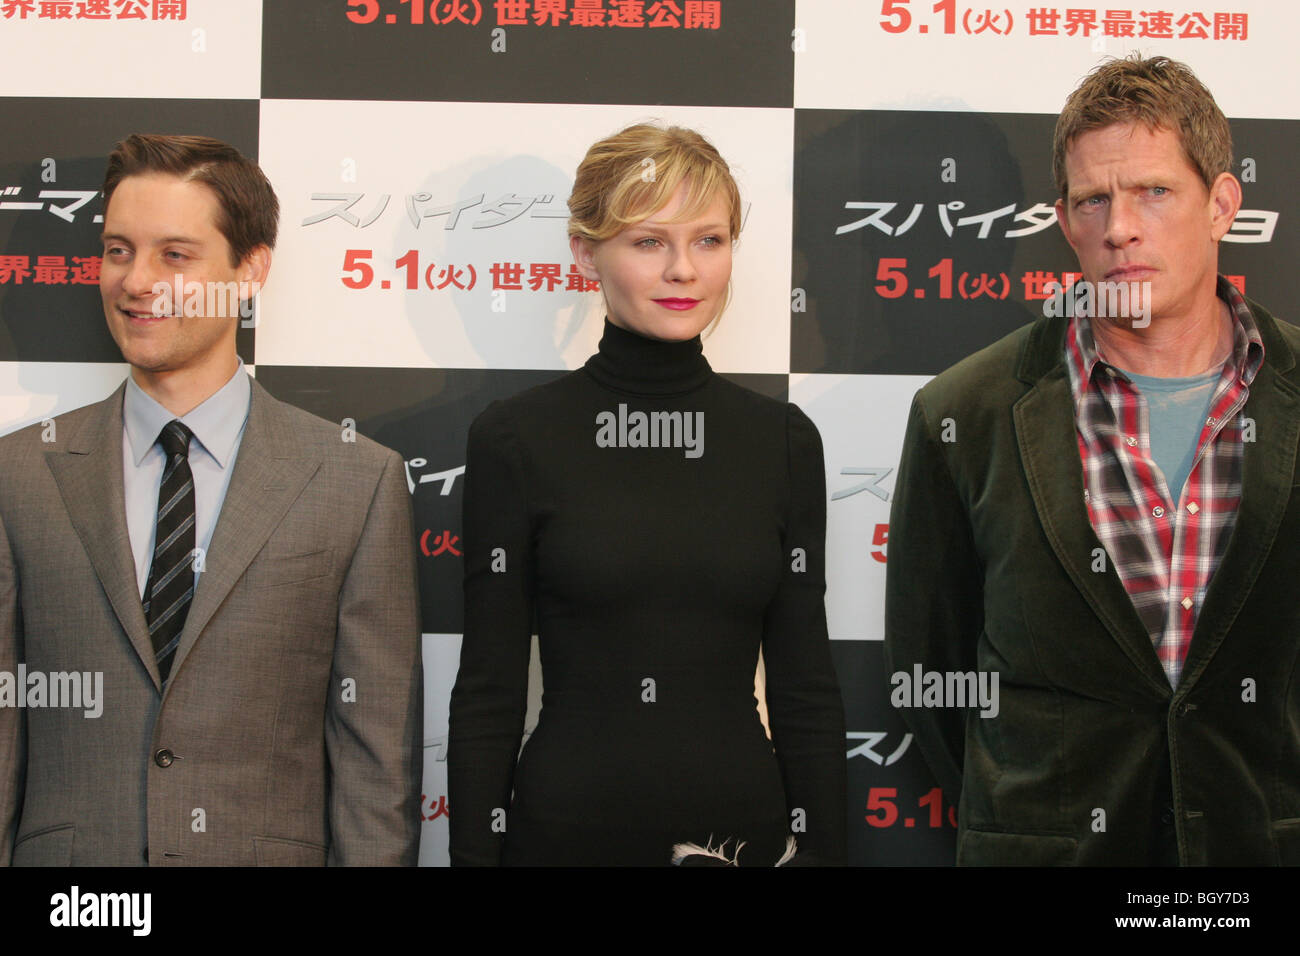 Attori Kirsten Dunst, Tobey Maguire, Thomas Haden-Church, promozione di Spiderman 3 film. Foto Stock